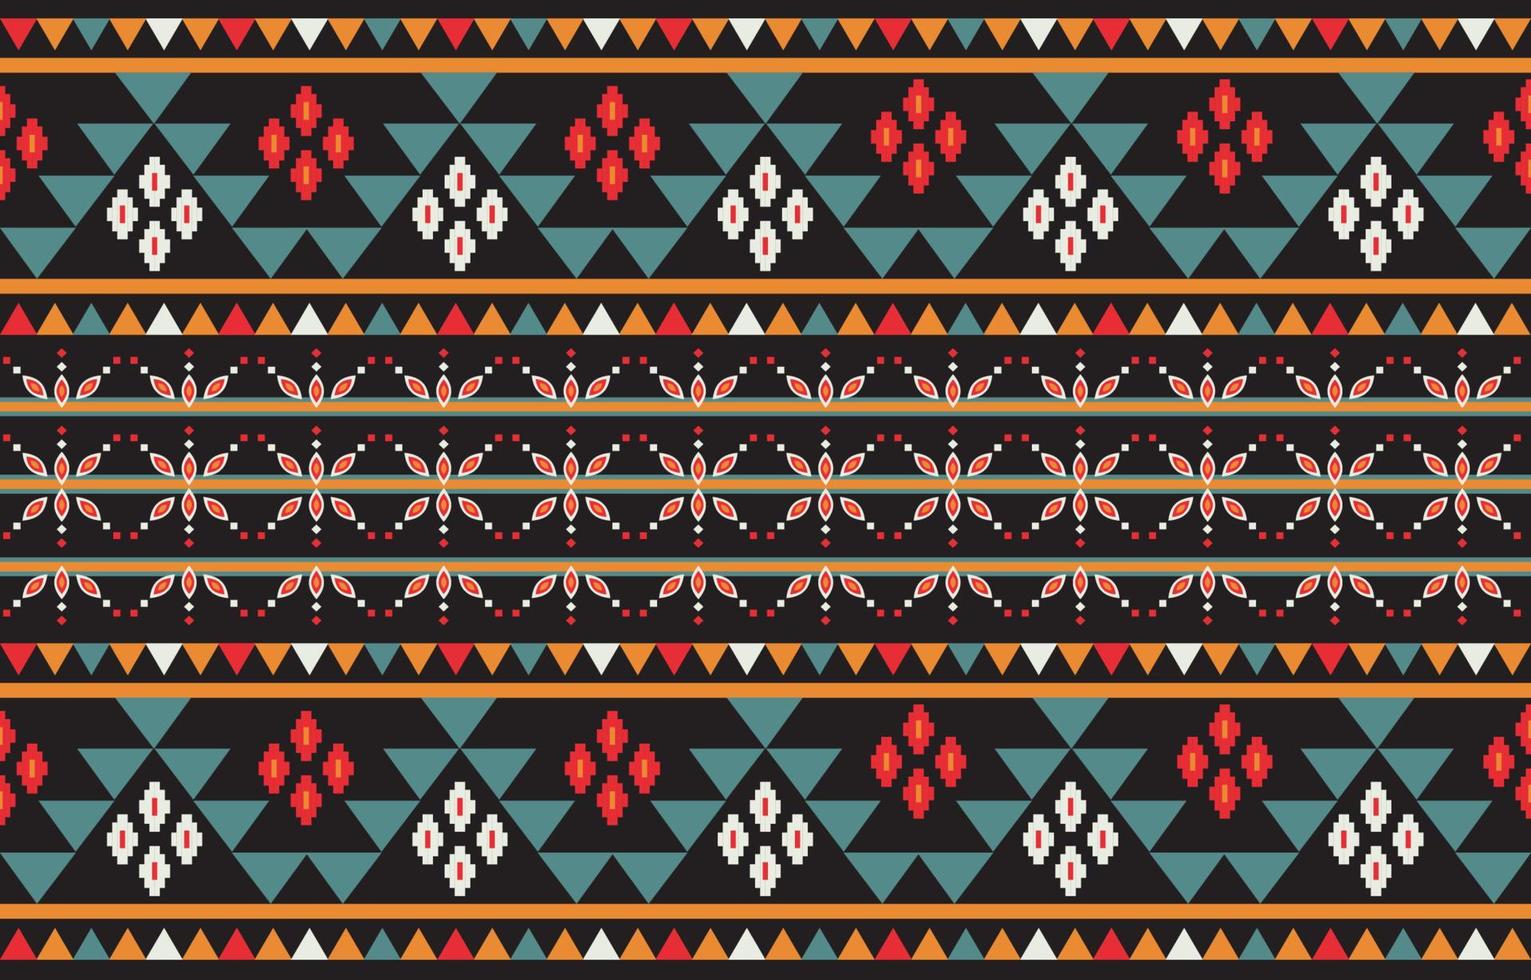 bel art géométrique abstrait ethnique. motif chevron sans couture en broderie tribale, folklorique et florale. aztec rhombus art ornament print.design pour tapis, papier peint, vêtements, emballage, tissu. vecteur